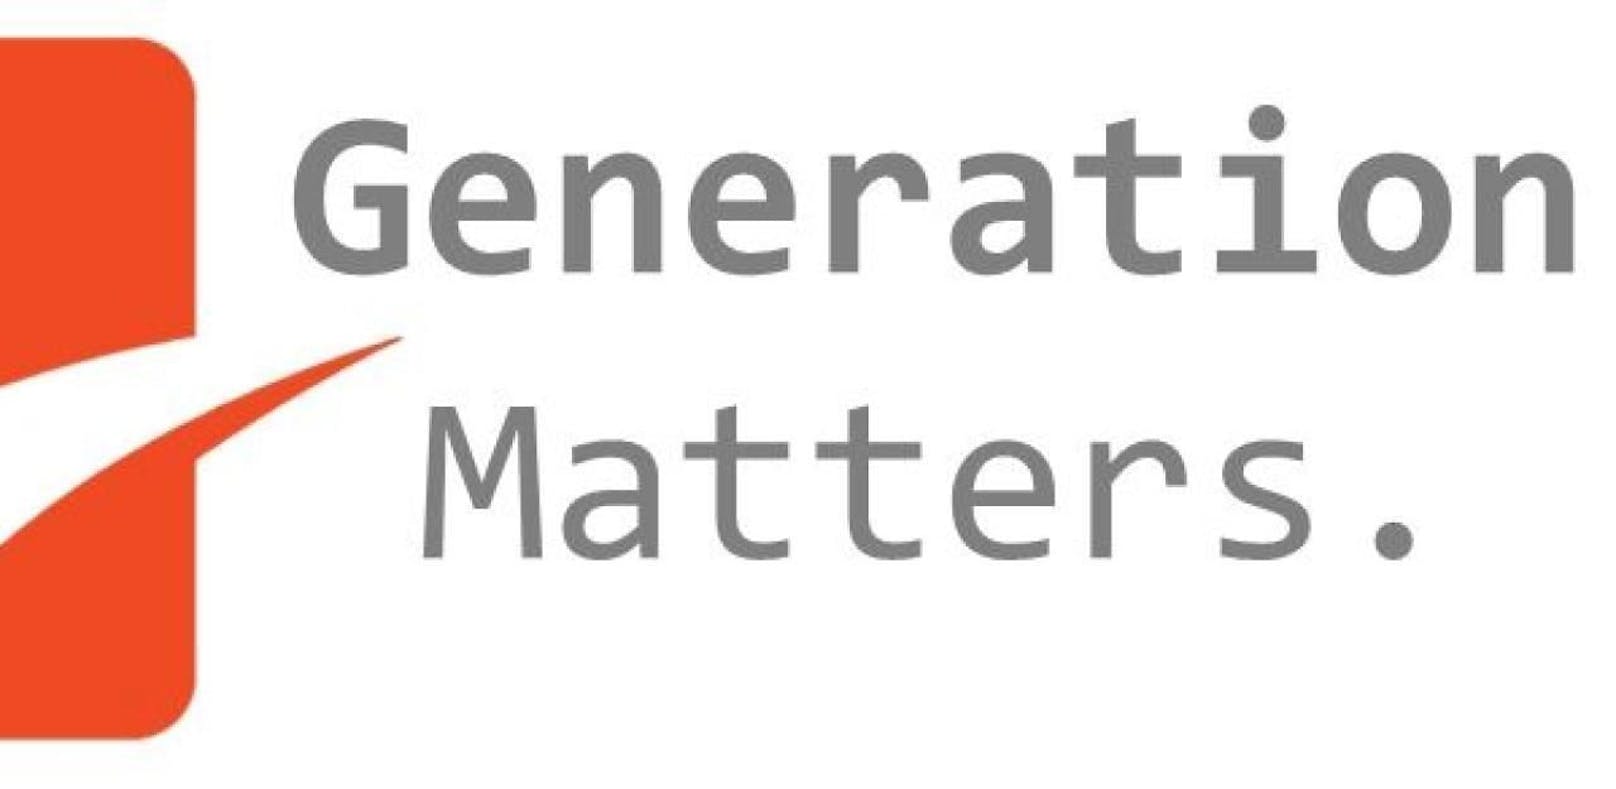 Generation Matters / EmoG Workshops